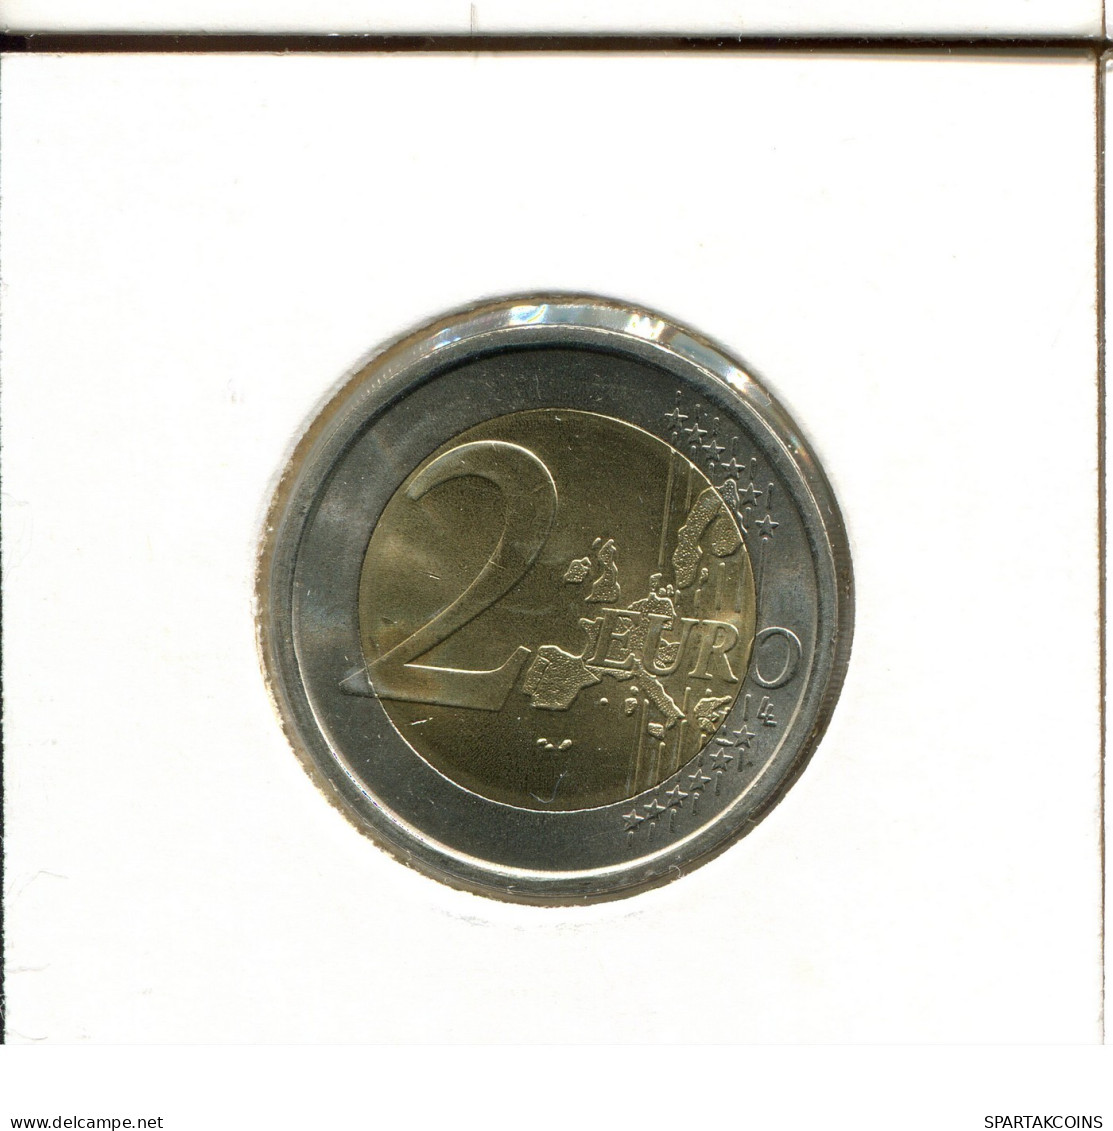 2 EURO 2002 ITALIA ITALY Moneda #EU222.E.A - Italia